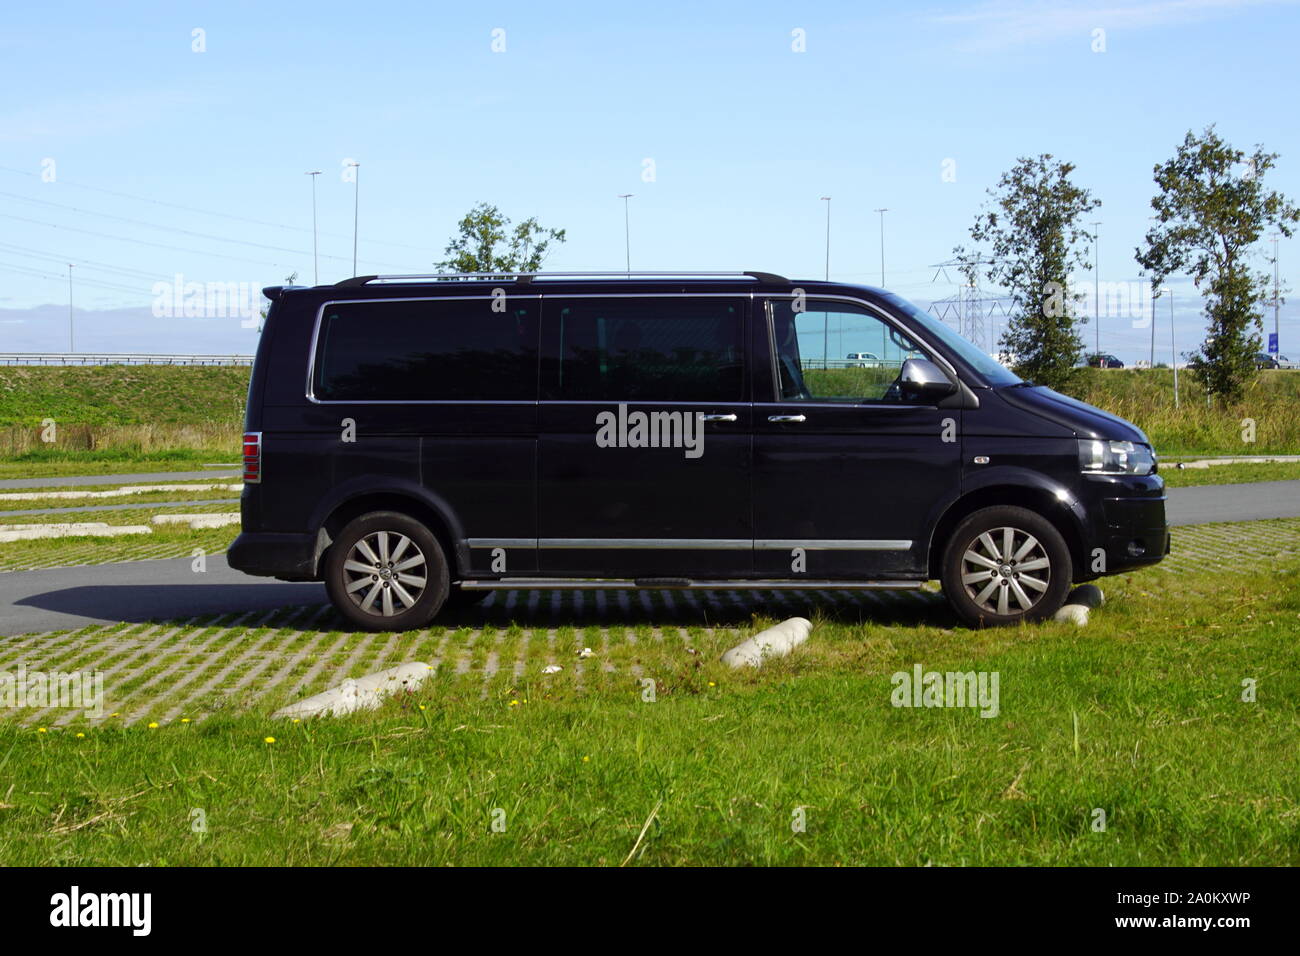 Almere, Pays-Bas - 20 septembre 2019 : Noir Volkswagen Transporter / surveillance détective privé van en aveugle sous windows. Banque D'Images